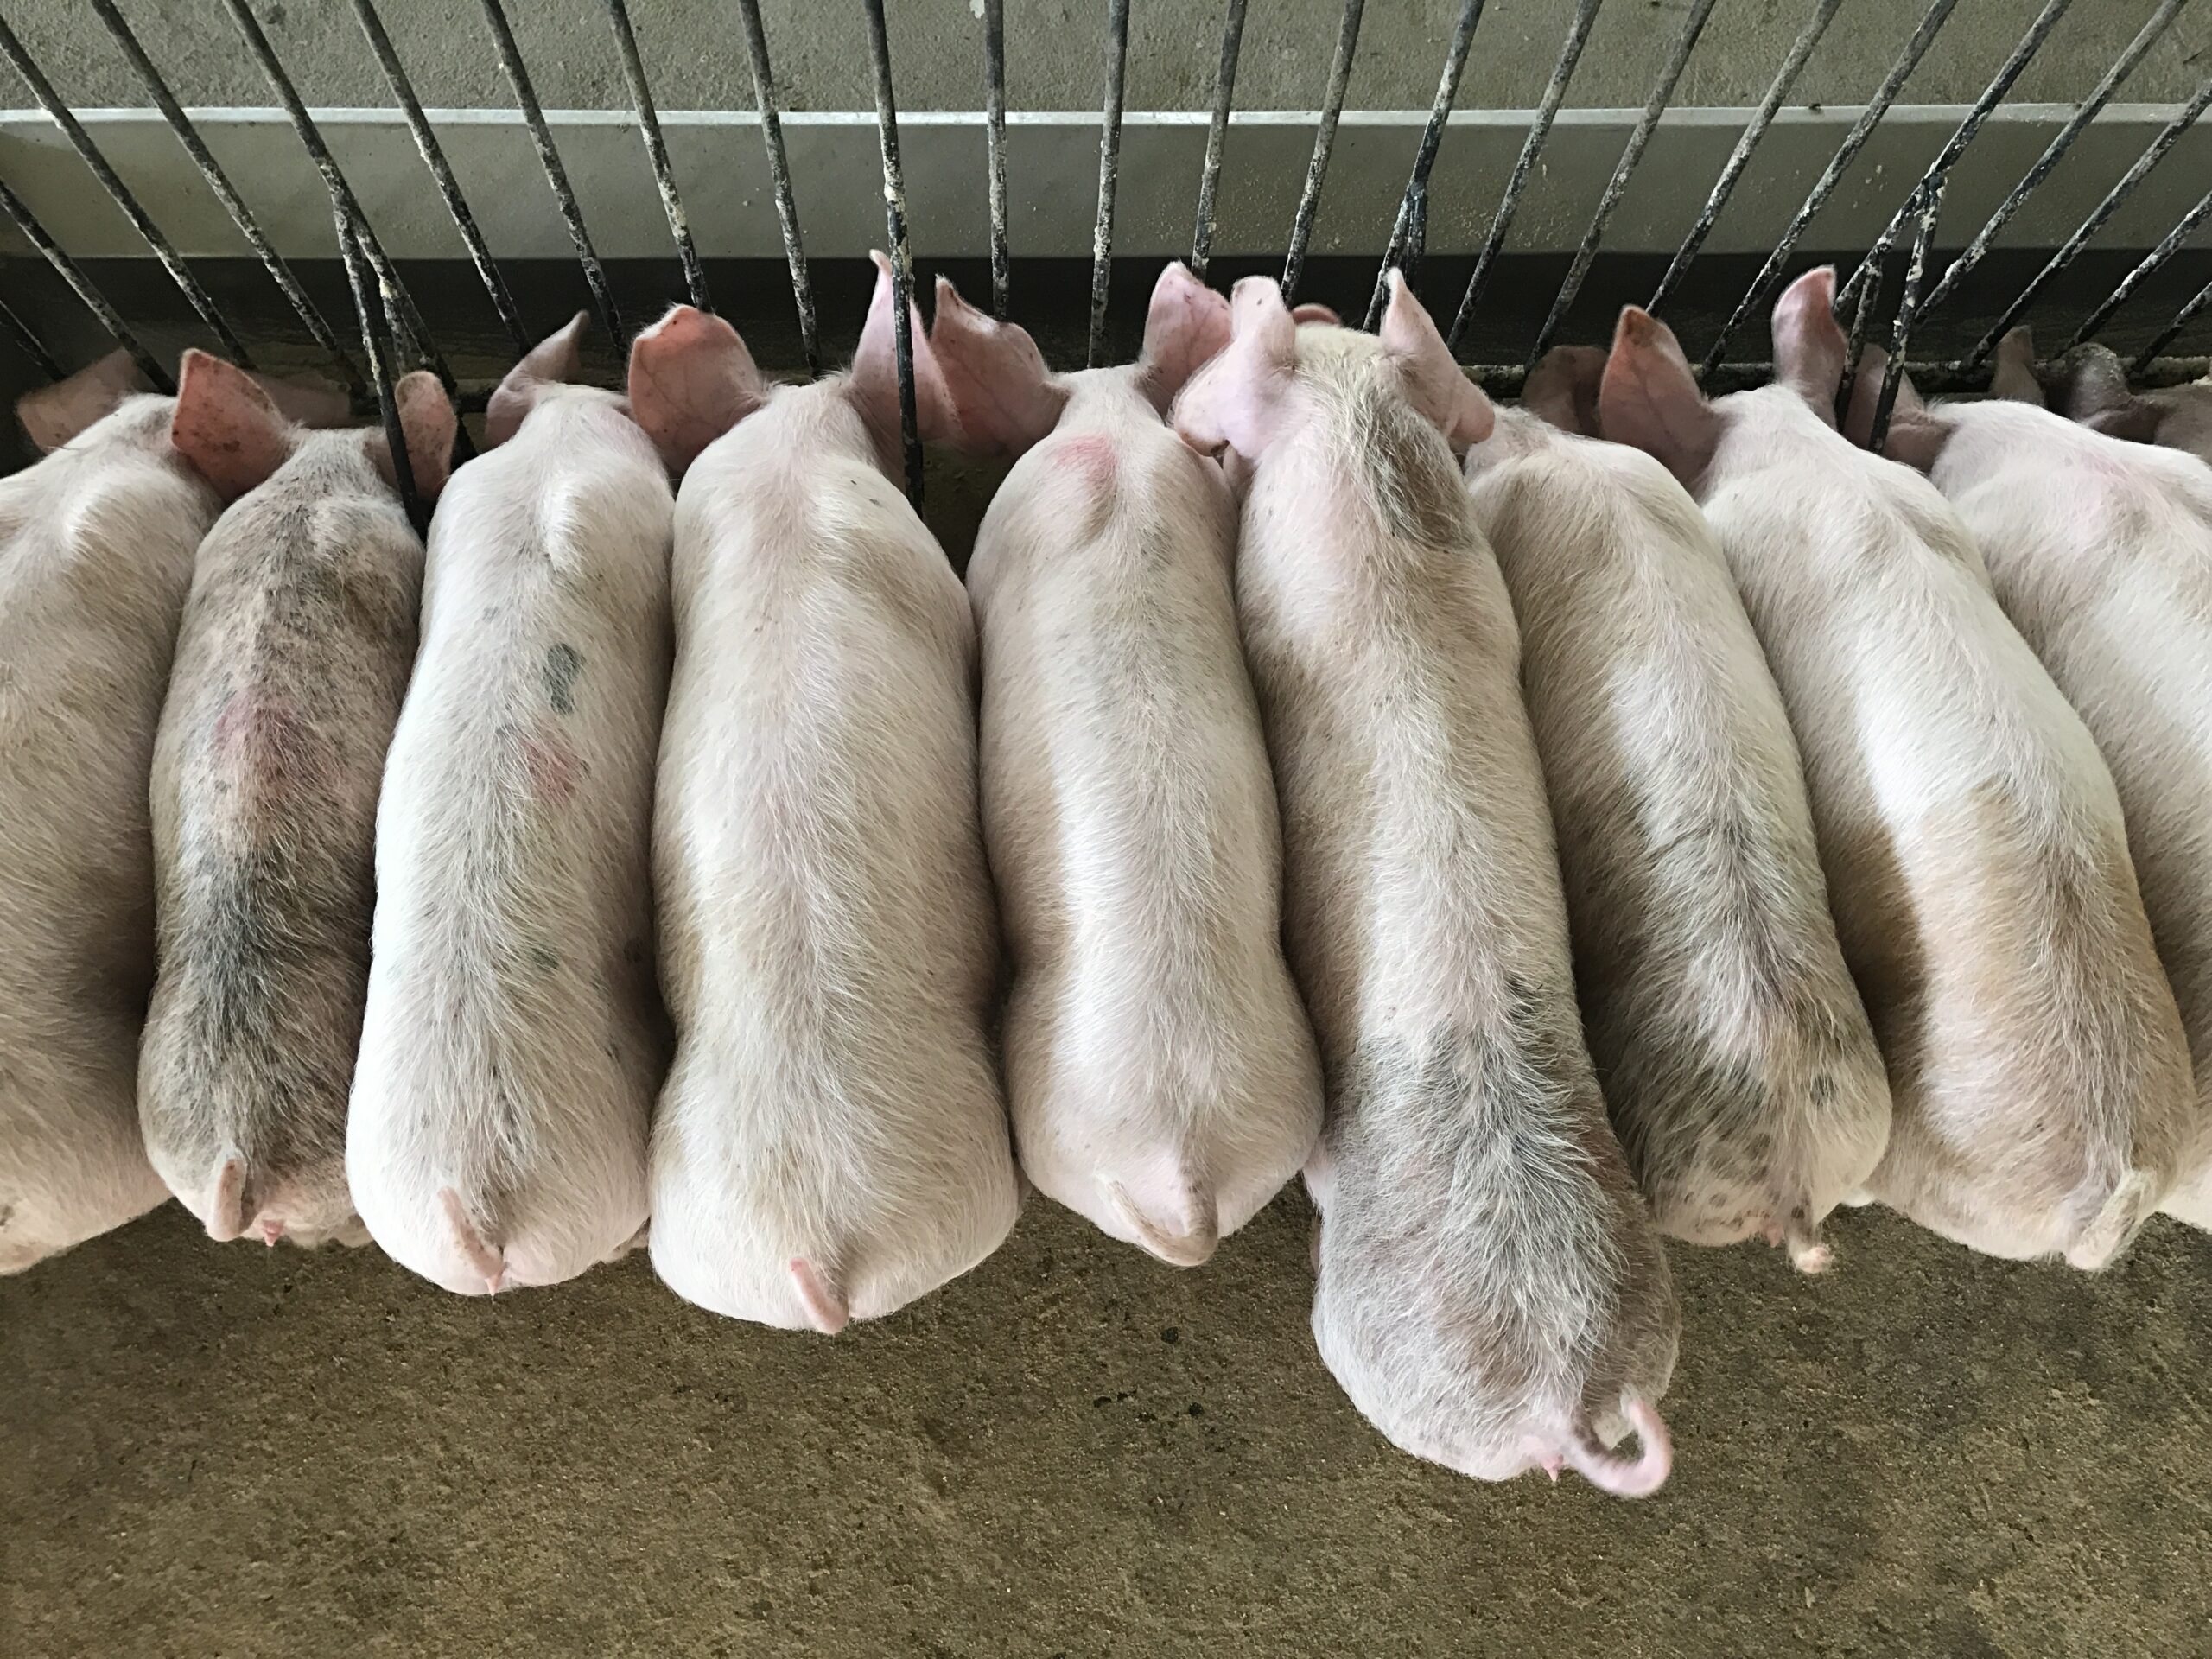 Limbah makanan dalam pemberian pakan babi